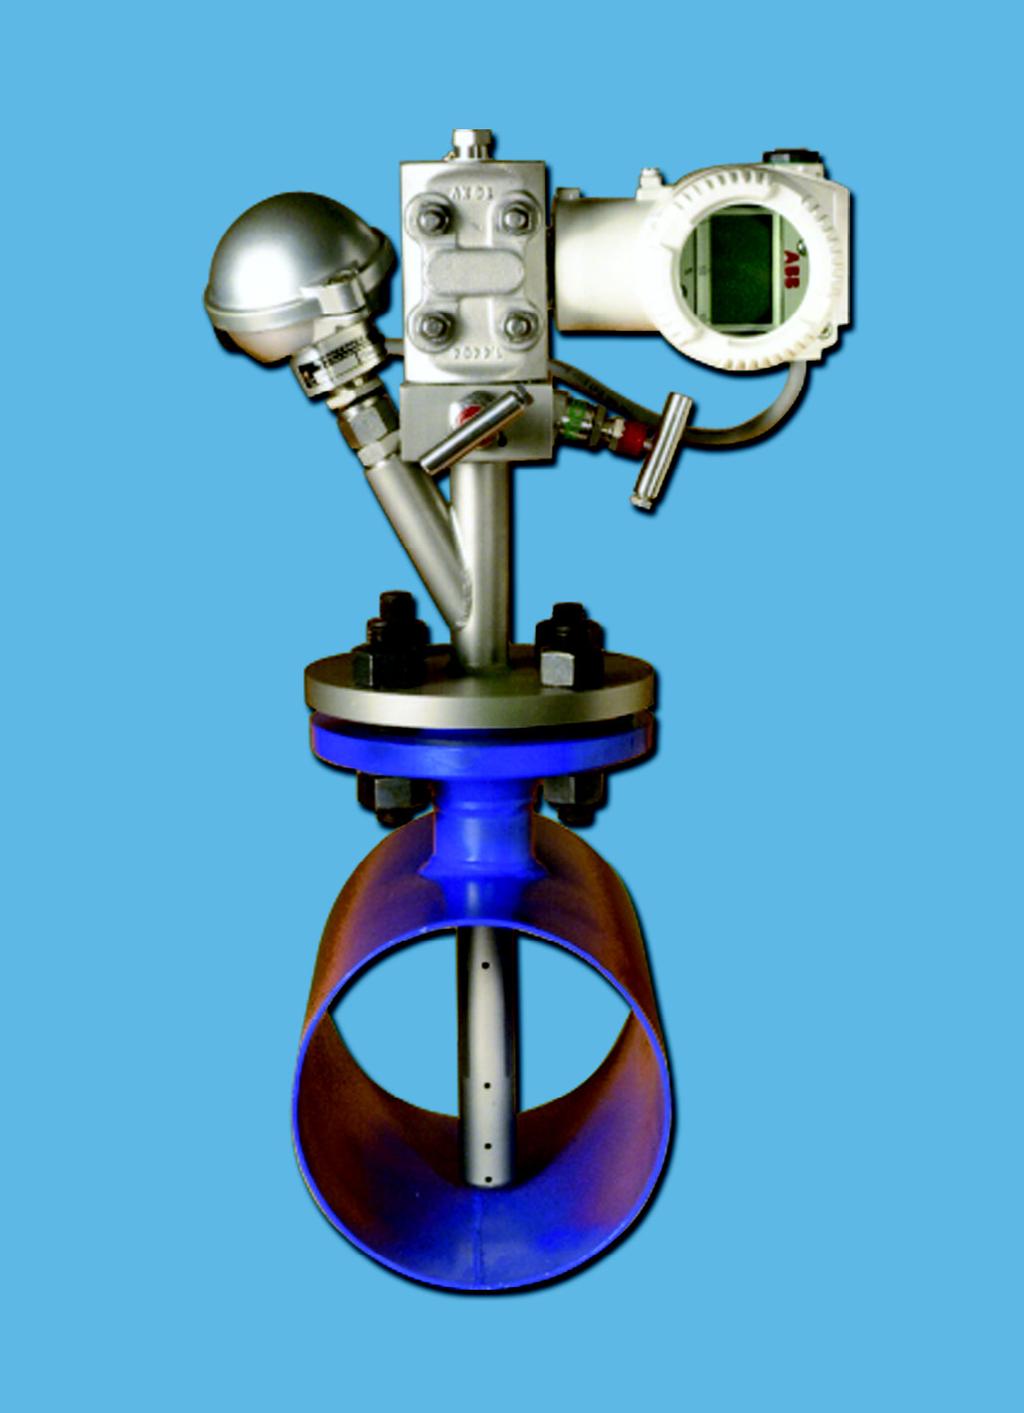 MASS TRIBAR Compensated Mass Flowmeter Description The MASS TRIBAR is an insertion flowmeter comprising an integral valve manifold a PT100 temperature element and a Smart Multivariable Transmitter